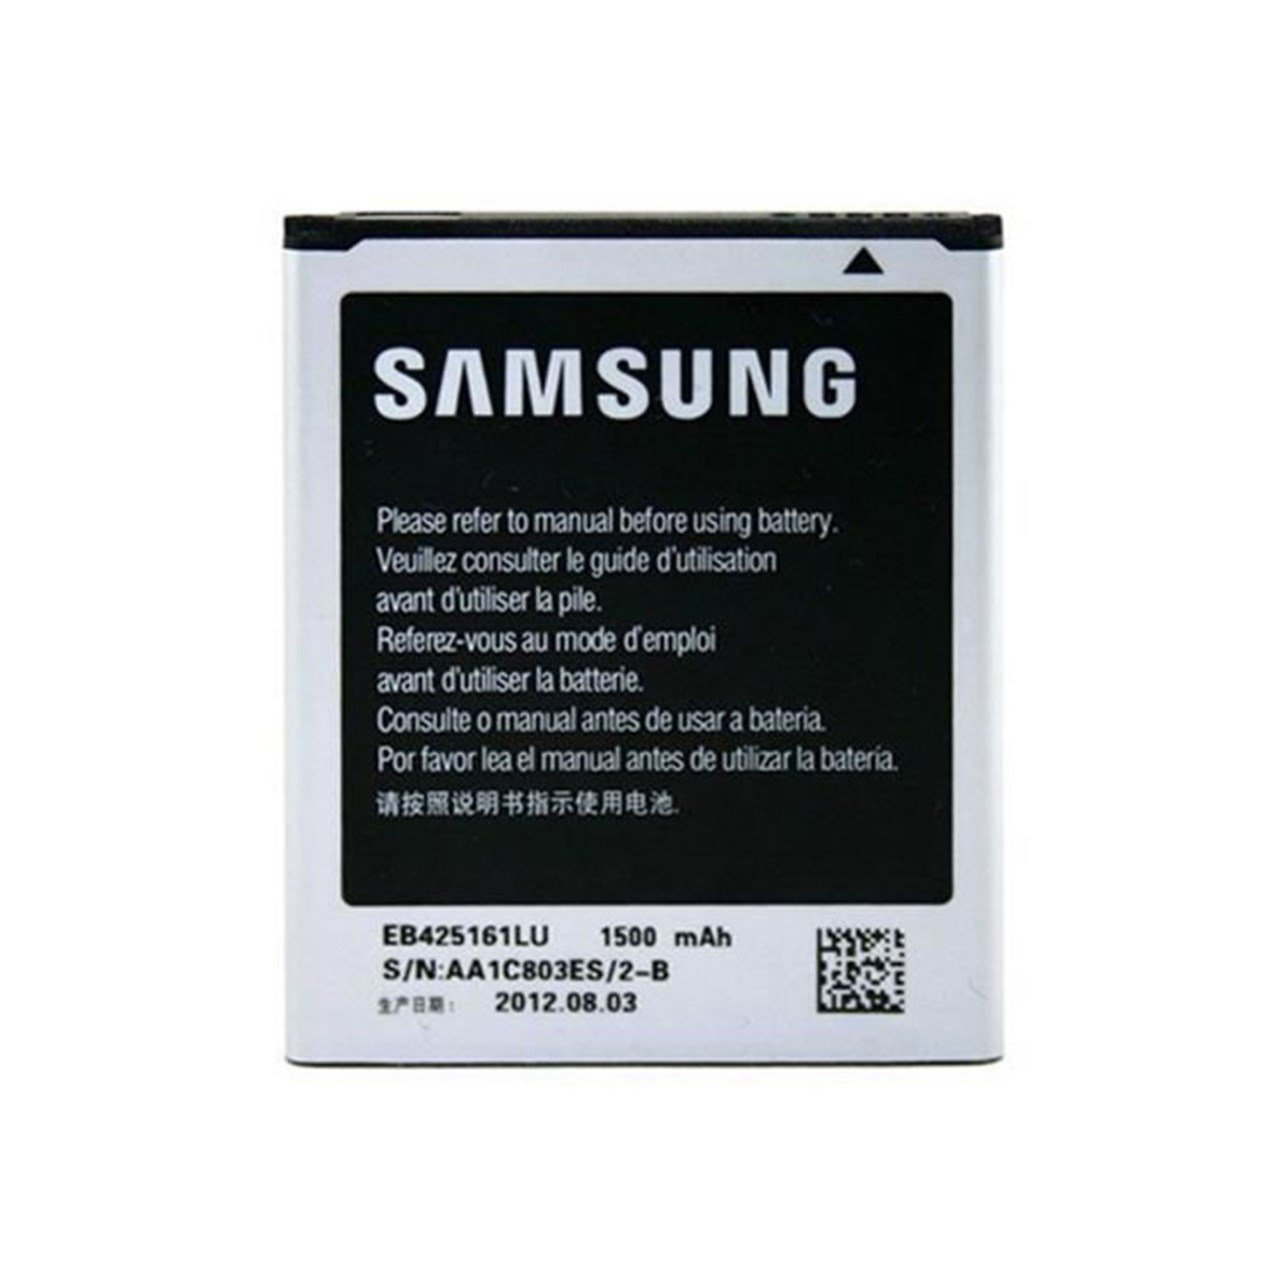 باتری موبایل مدل EB425161LU مناسب برای گوشی موبایل سامسونگGalaxy S3 Mini